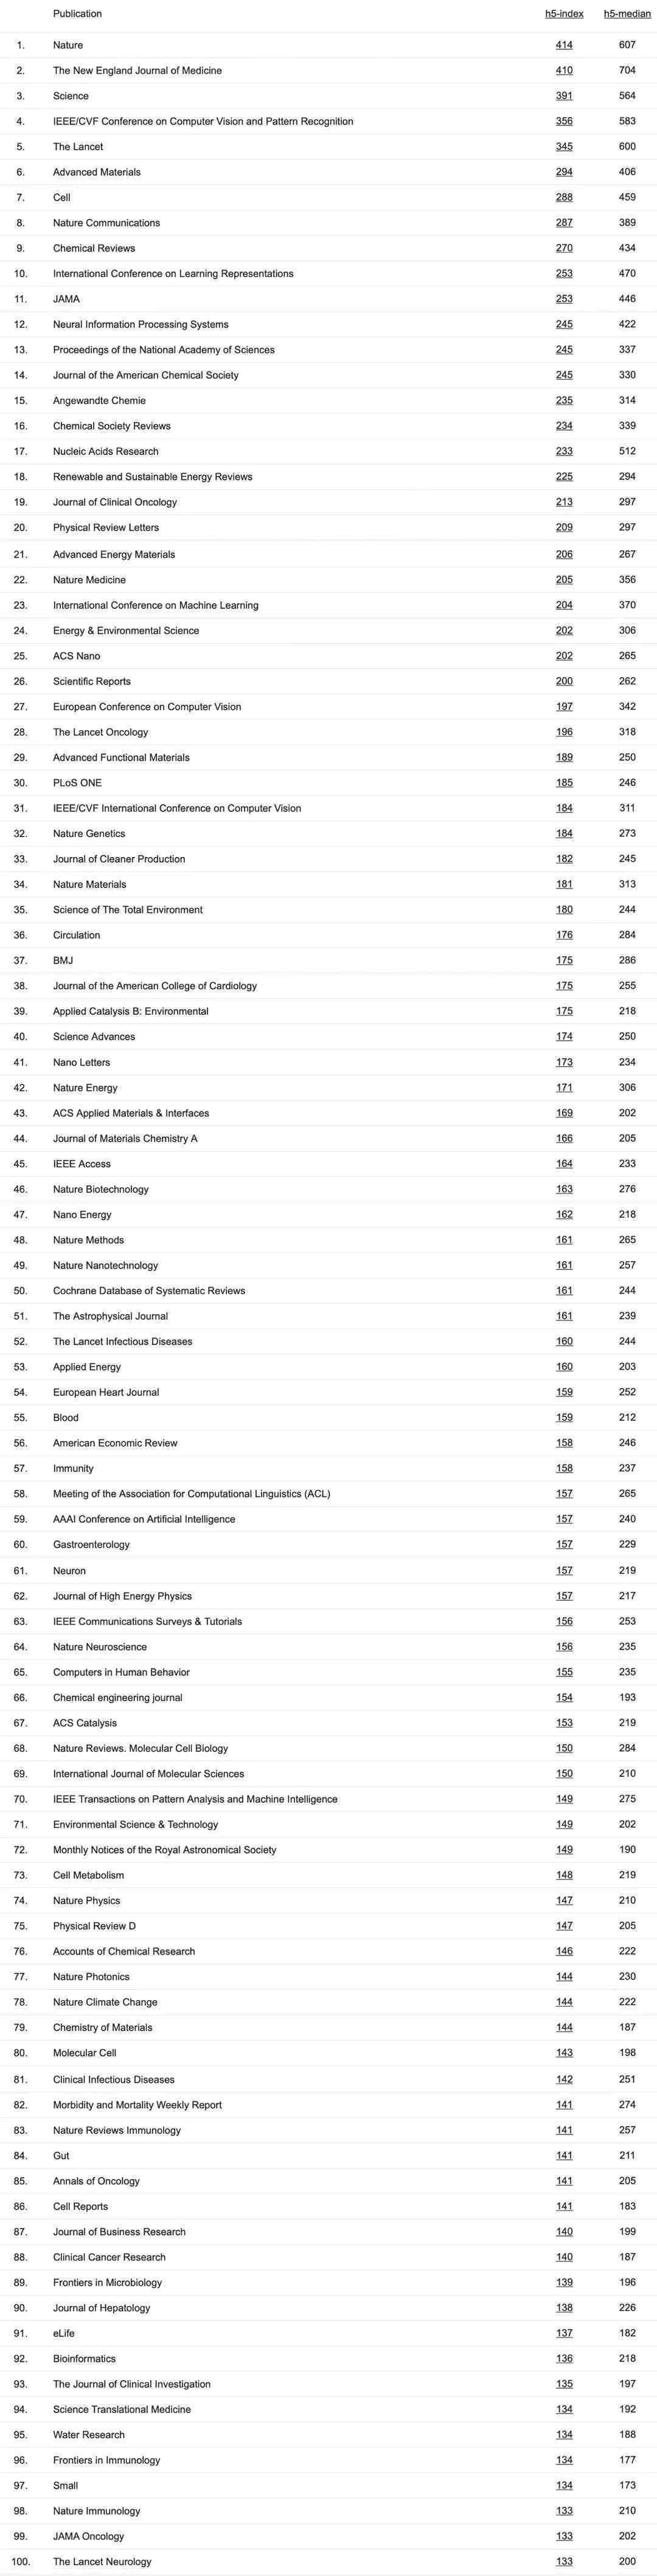 2021谷歌学术期刊与会议影响力榜单出炉！CVPR第4，ICLR挤进前10